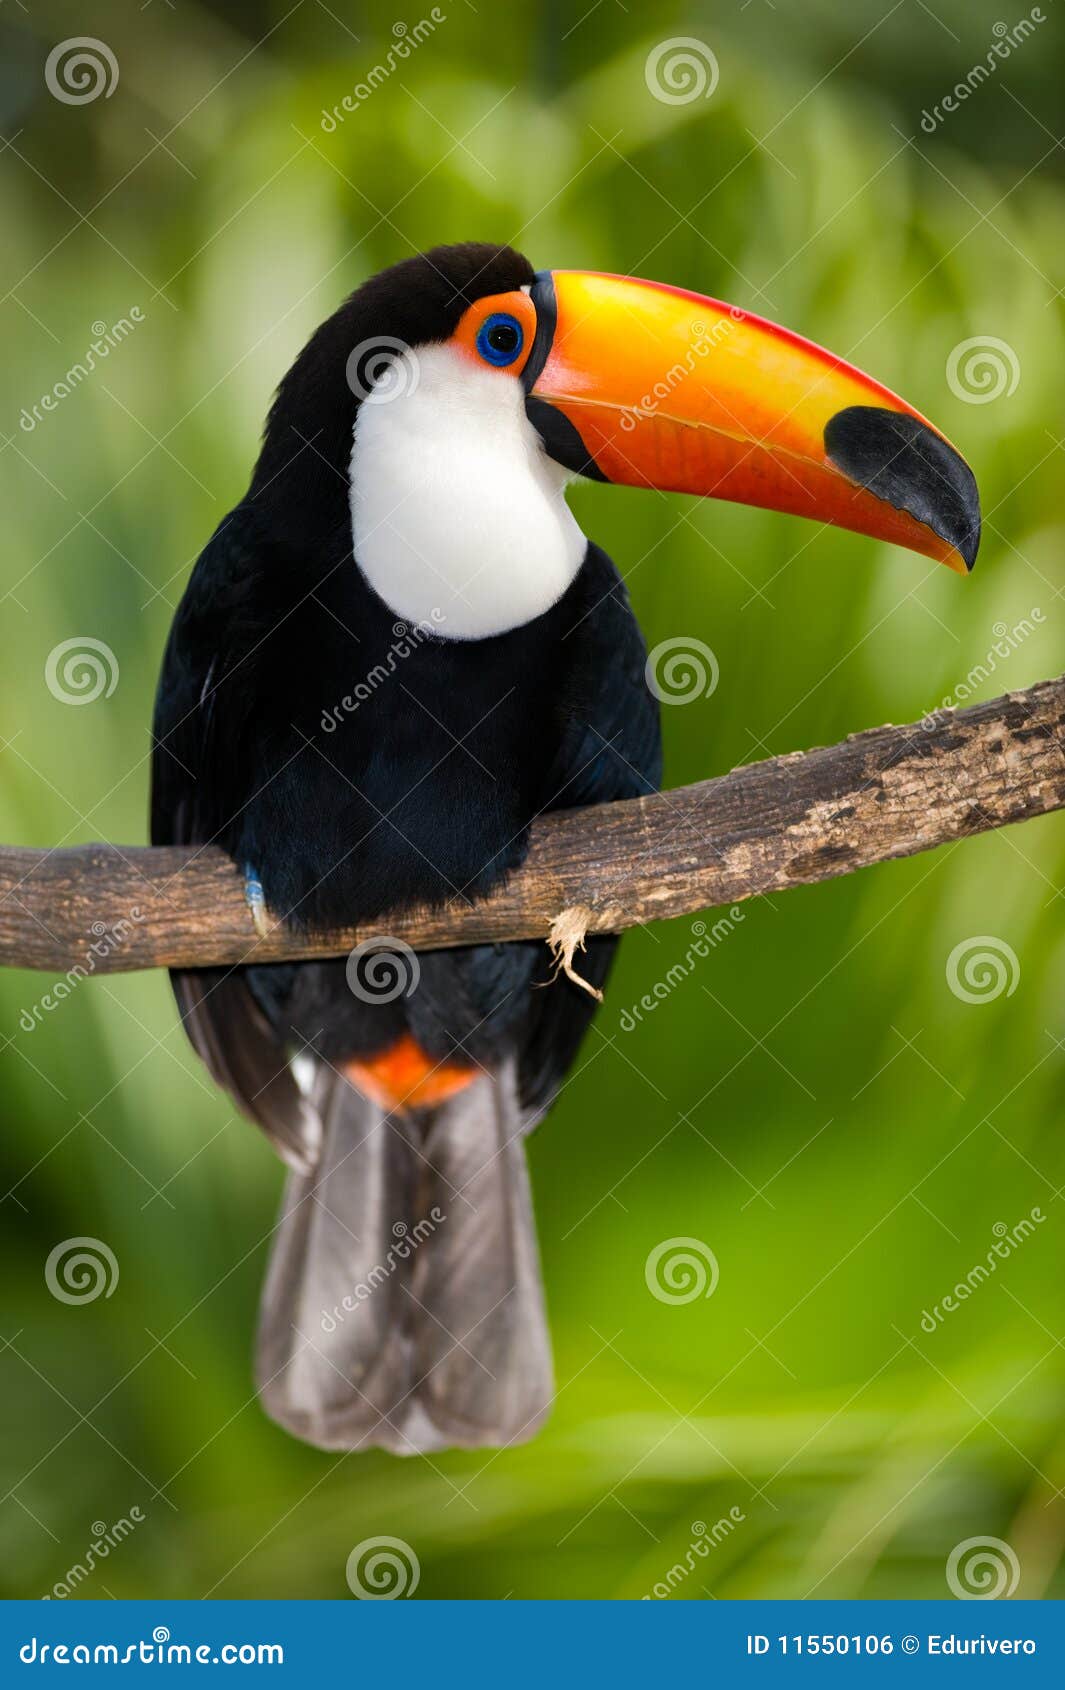 toucan in dense vegetation